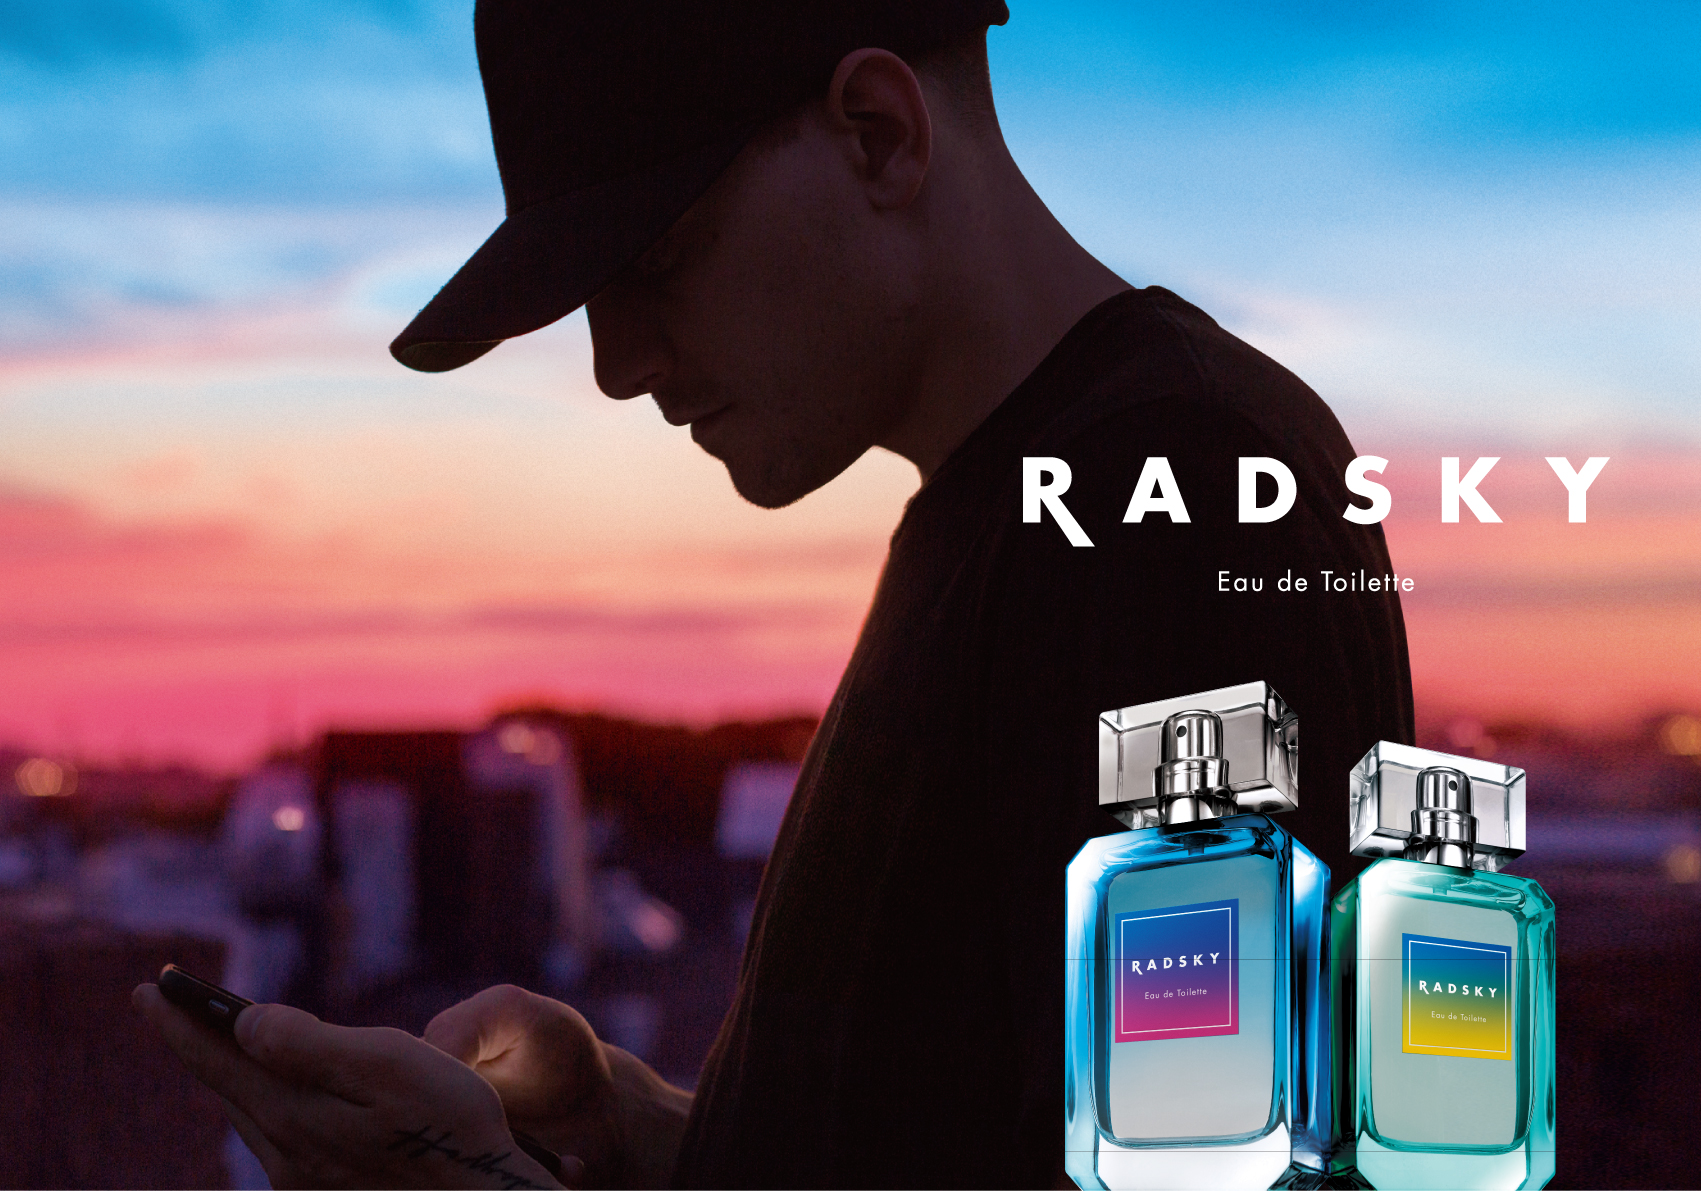 日本の香水メーカーが手掛けた 男性ビギナー向け香水 ラッドスカイ 発売 株式会社ウエニ貿易のプレスリリース